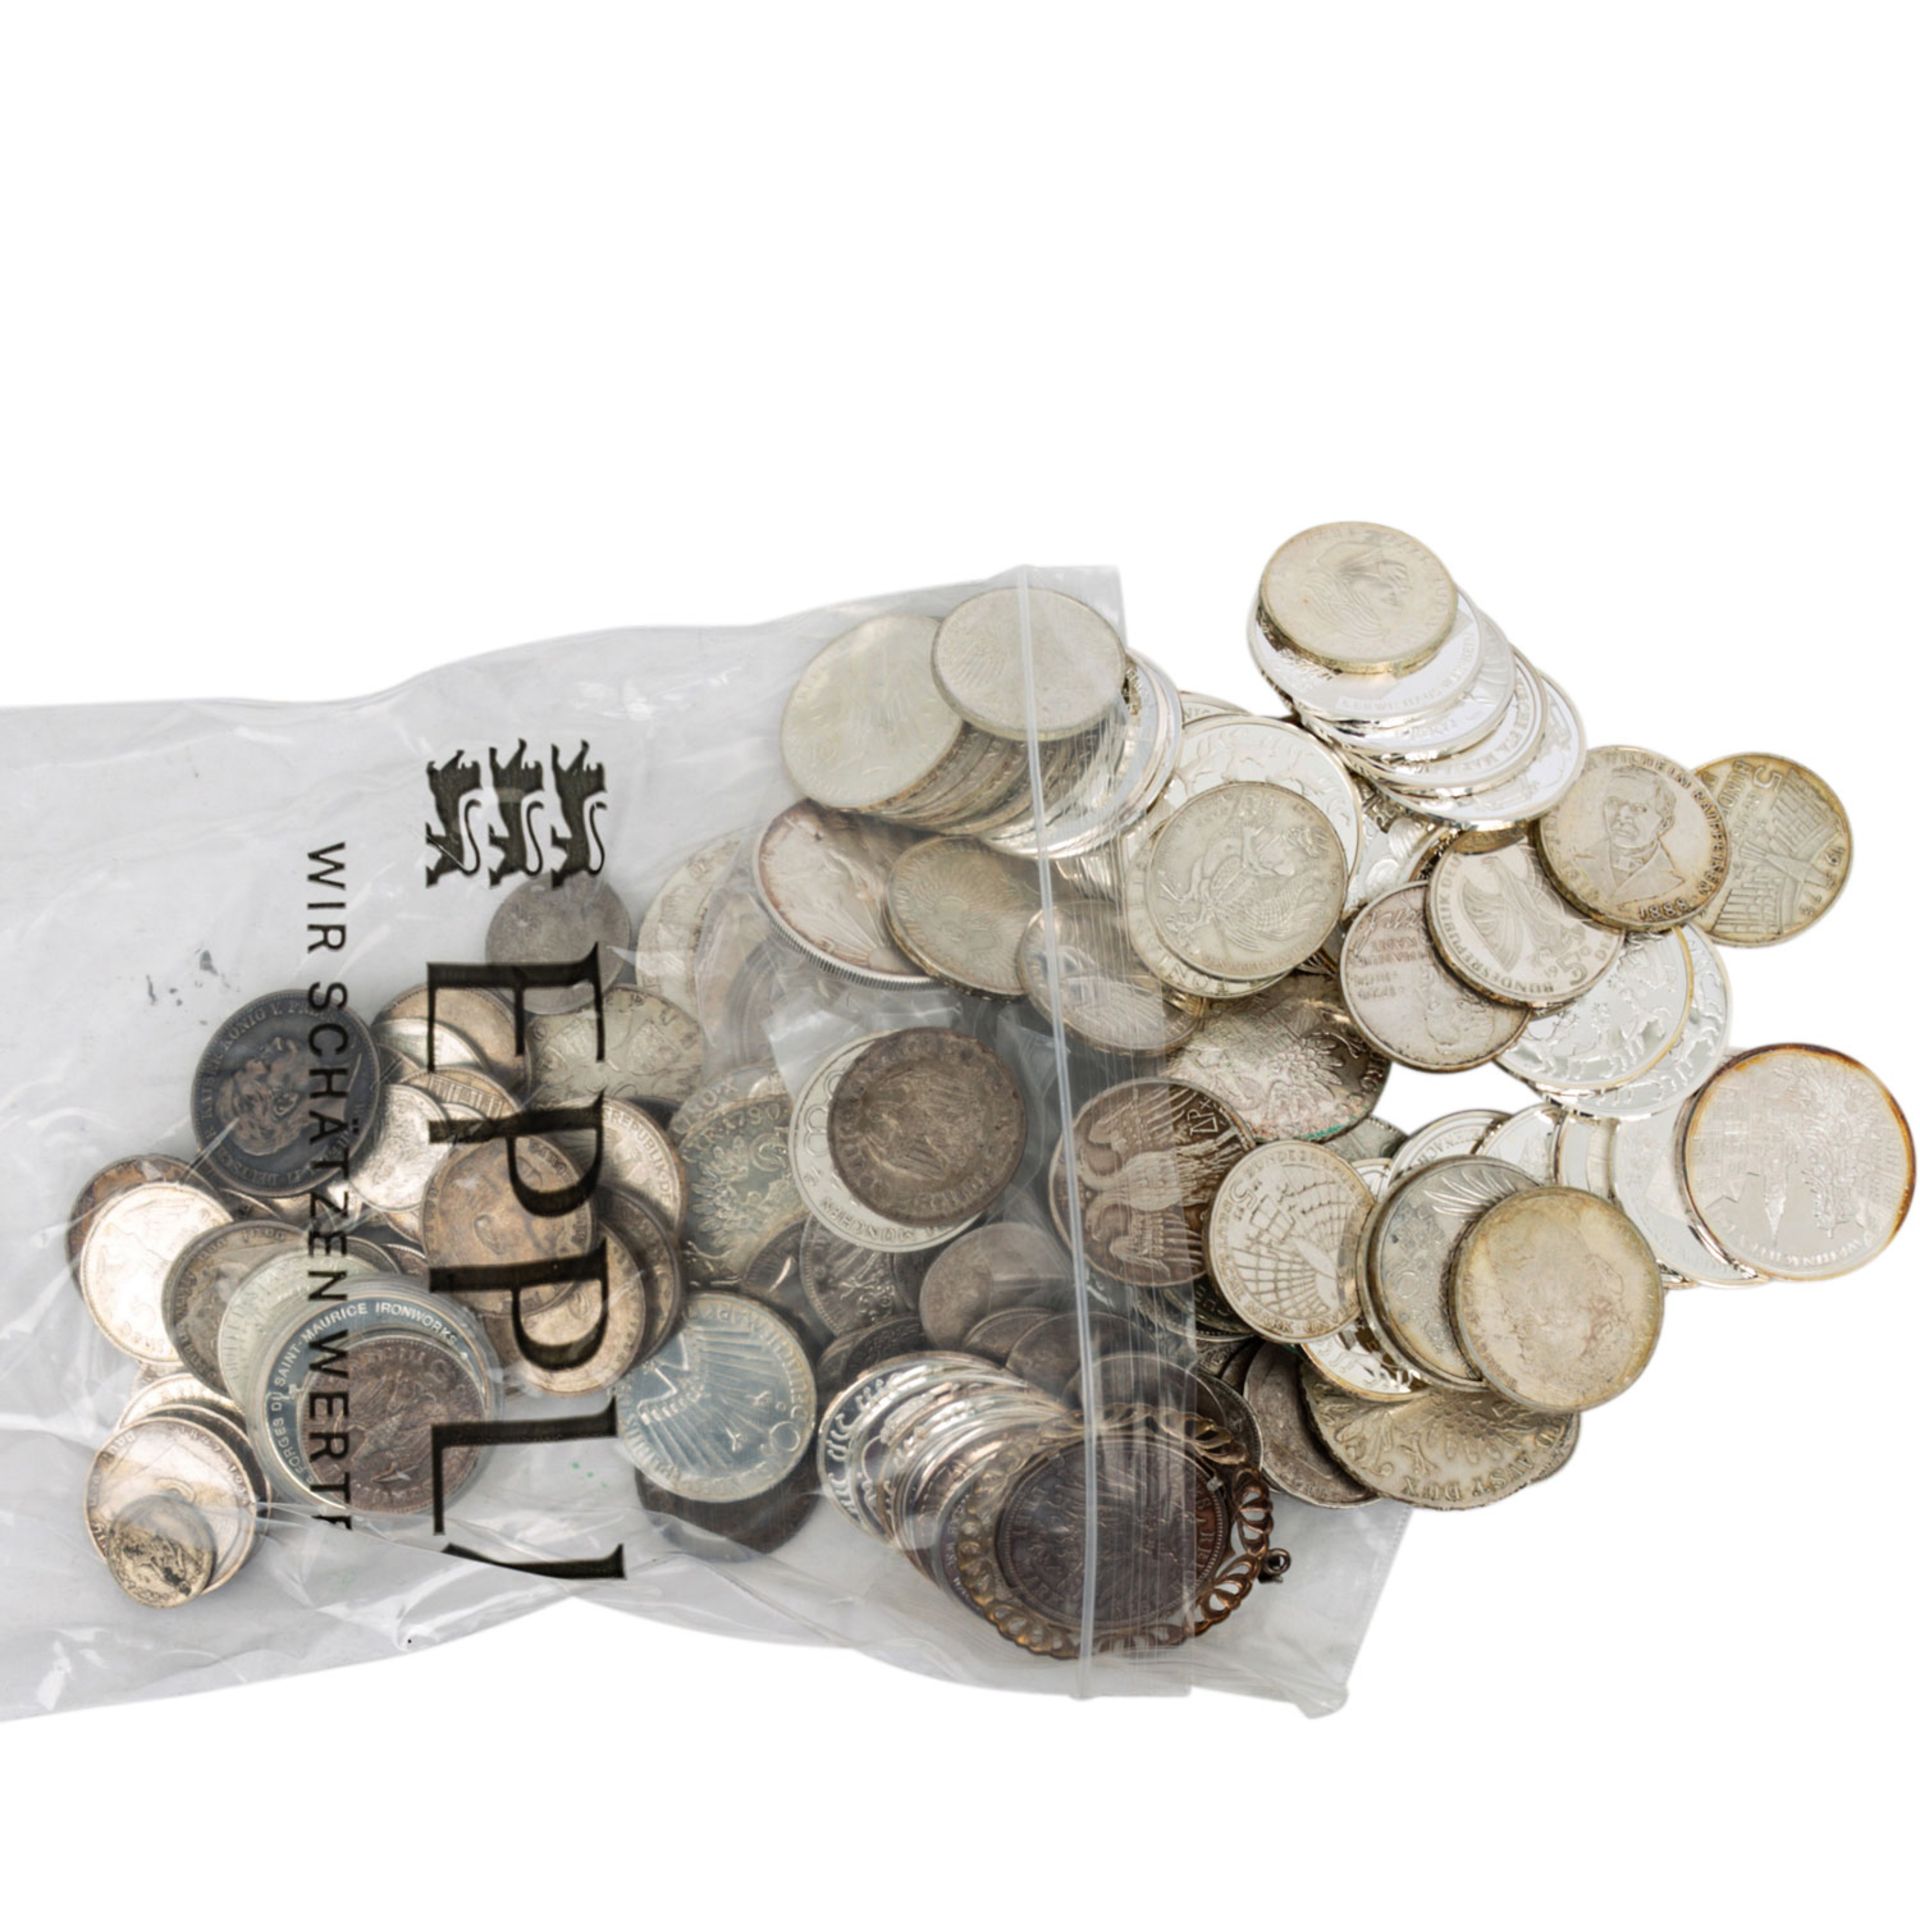 Karton mit Münzen und Medaillen, darin 11 x 1 oz. US Silver Eagle, 3 x 1 oz. Motivbar - Bild 5 aus 14